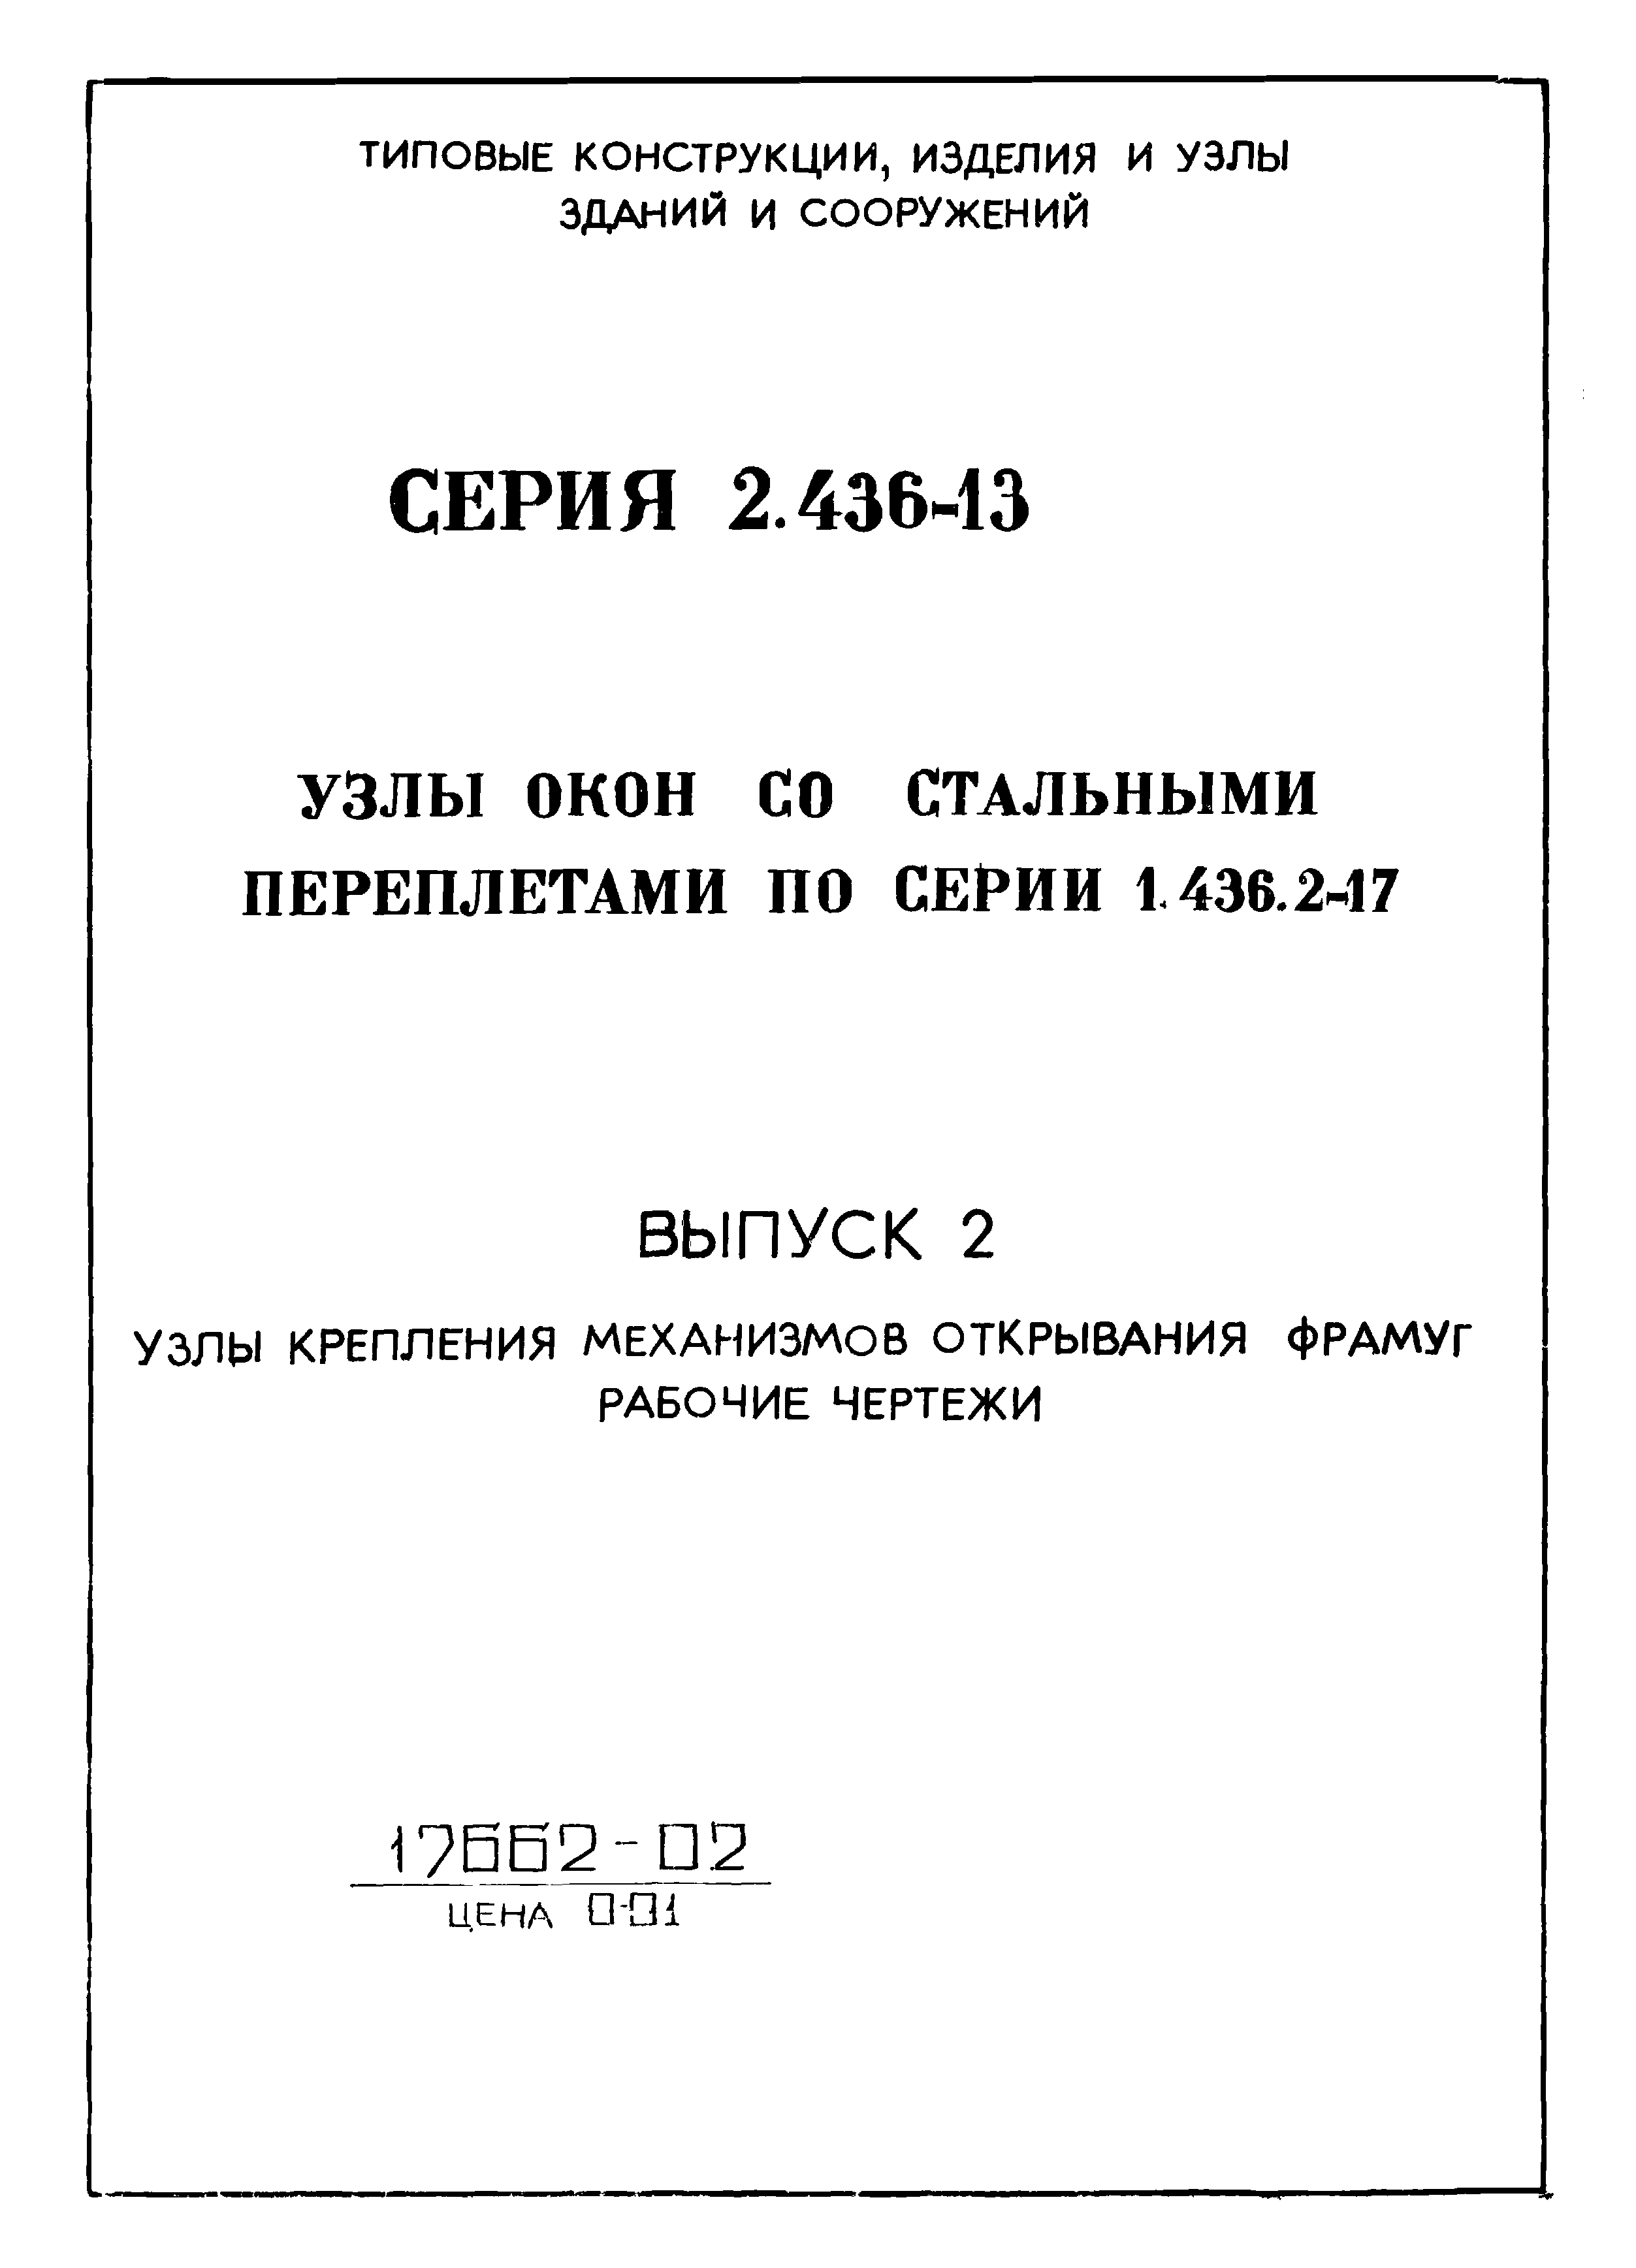 Серия 2.436-13